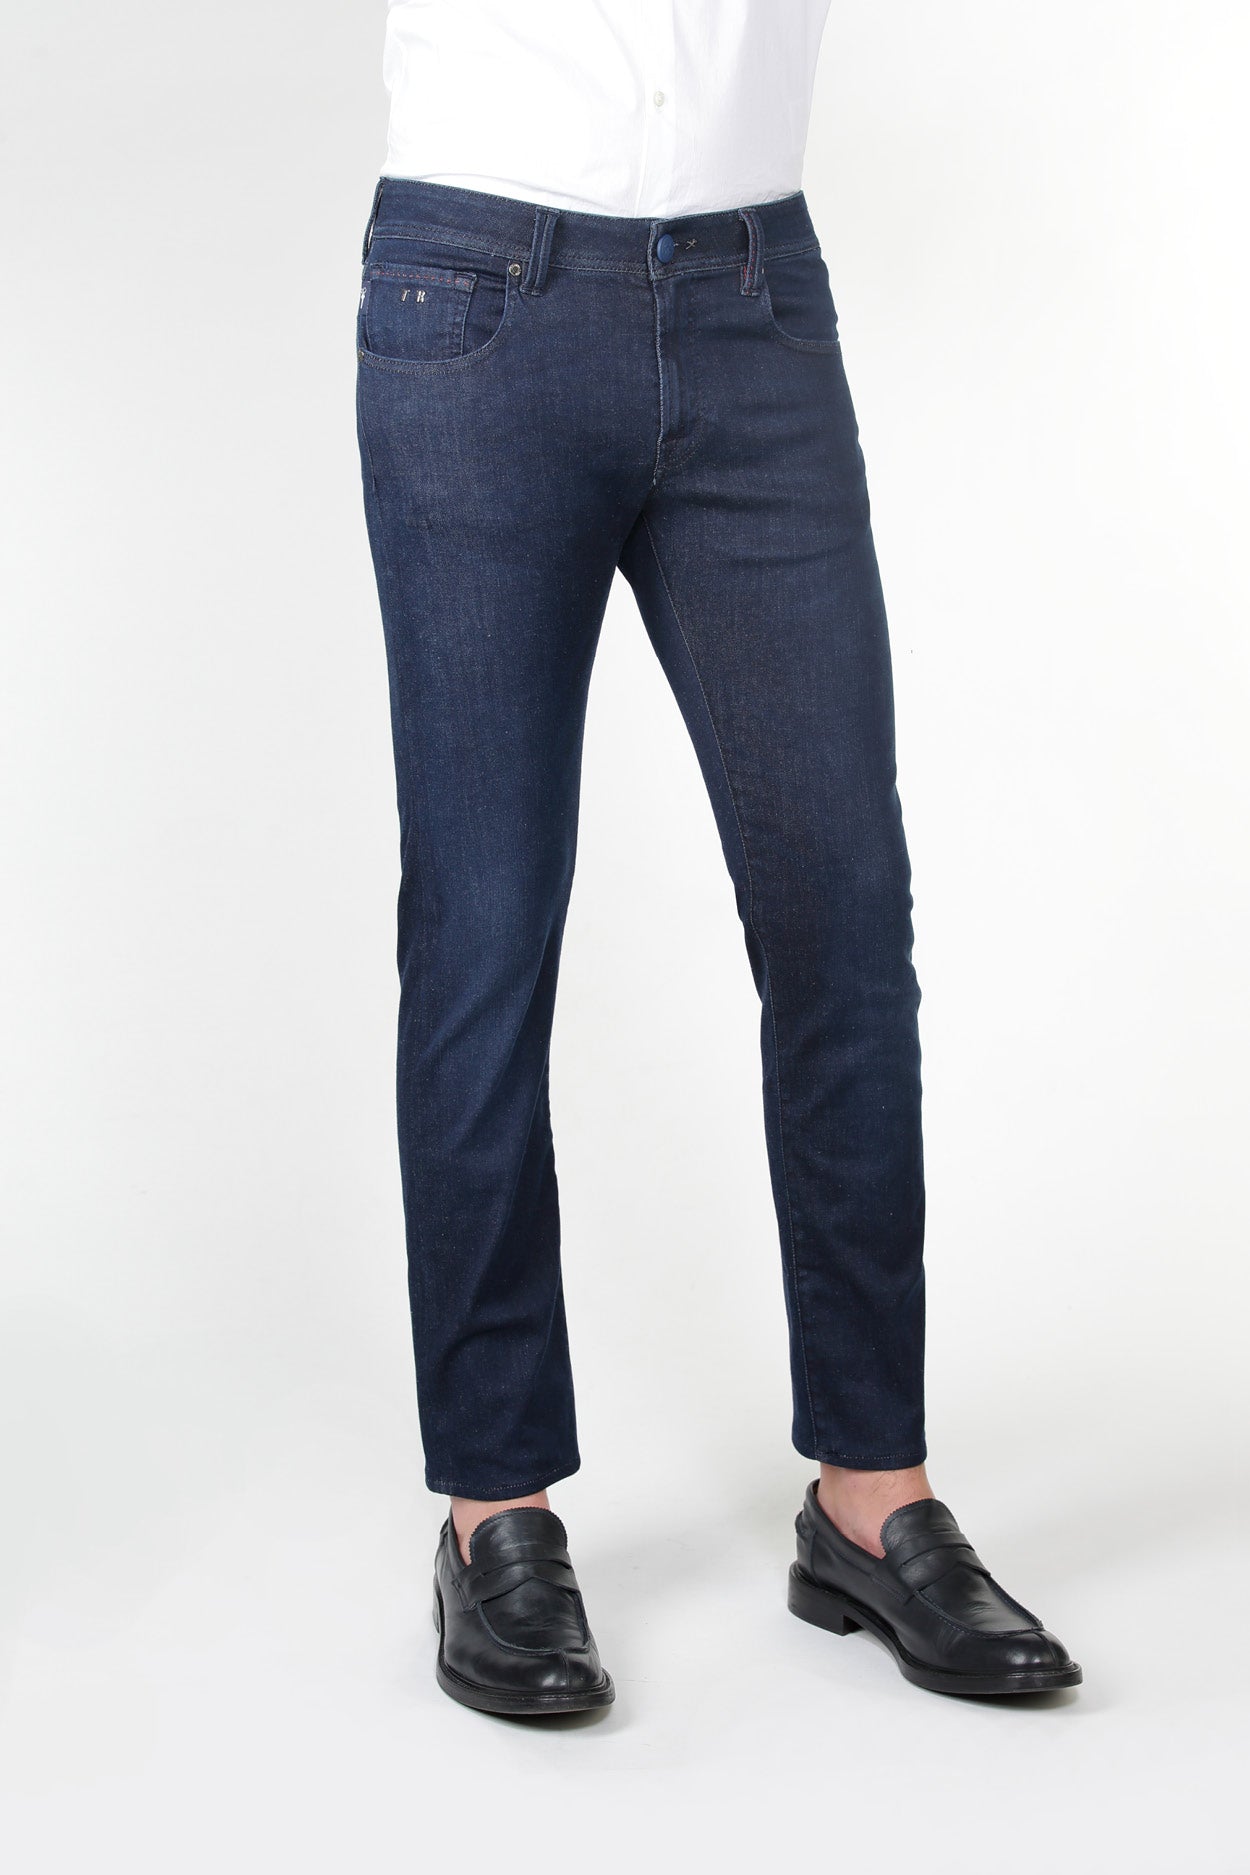 Michelangelo Denim Slim Superelax Jeans - 1 Month